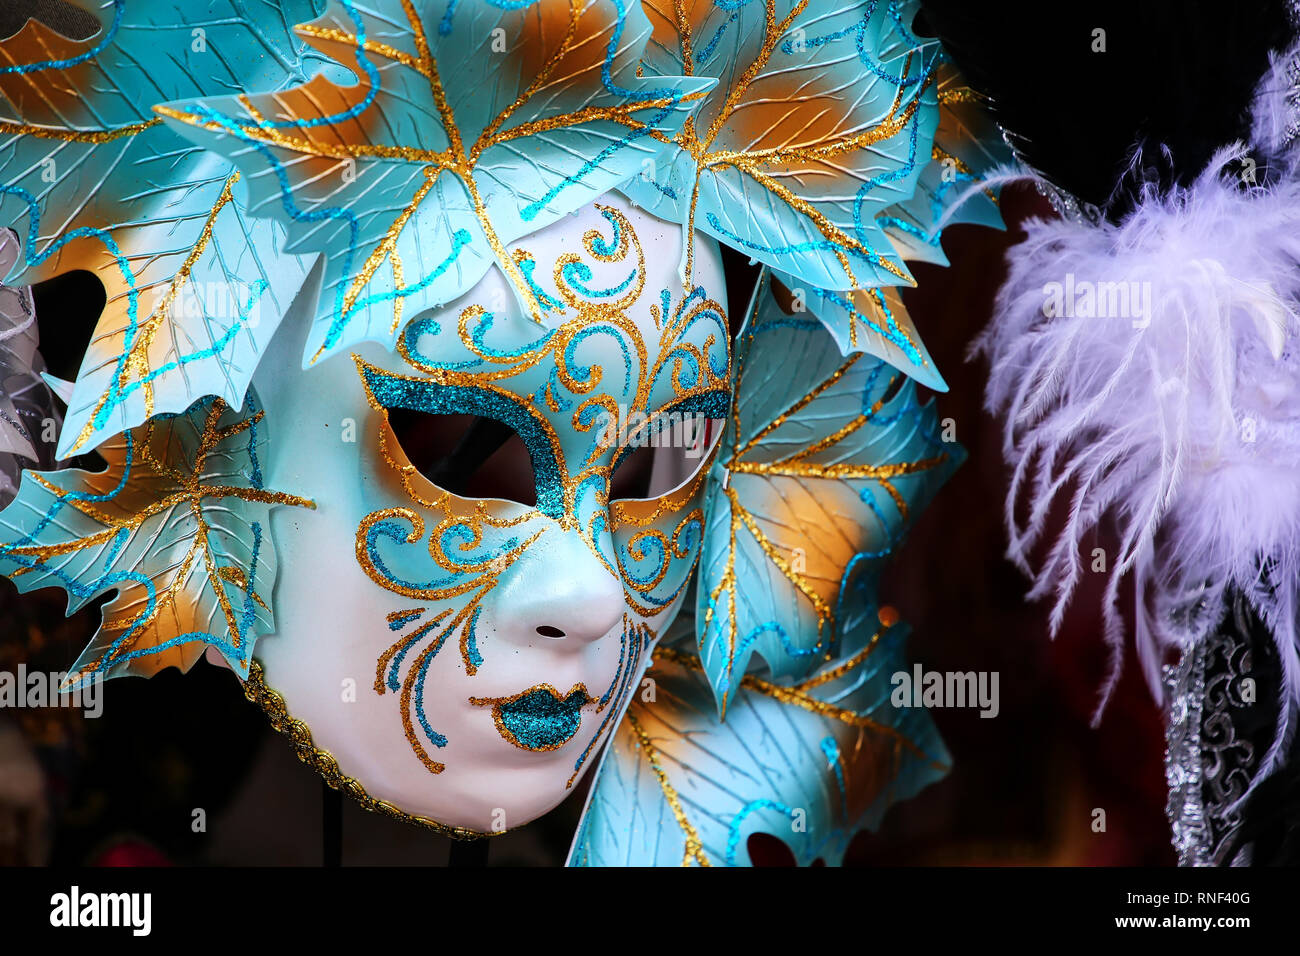 Maske auf Anzeige an einem Souvenirshop in der Strasse von Venedig, Italien. Masken haben immer eine wichtige Funktion des berühmten Venezianischen Karneval. Stockfoto